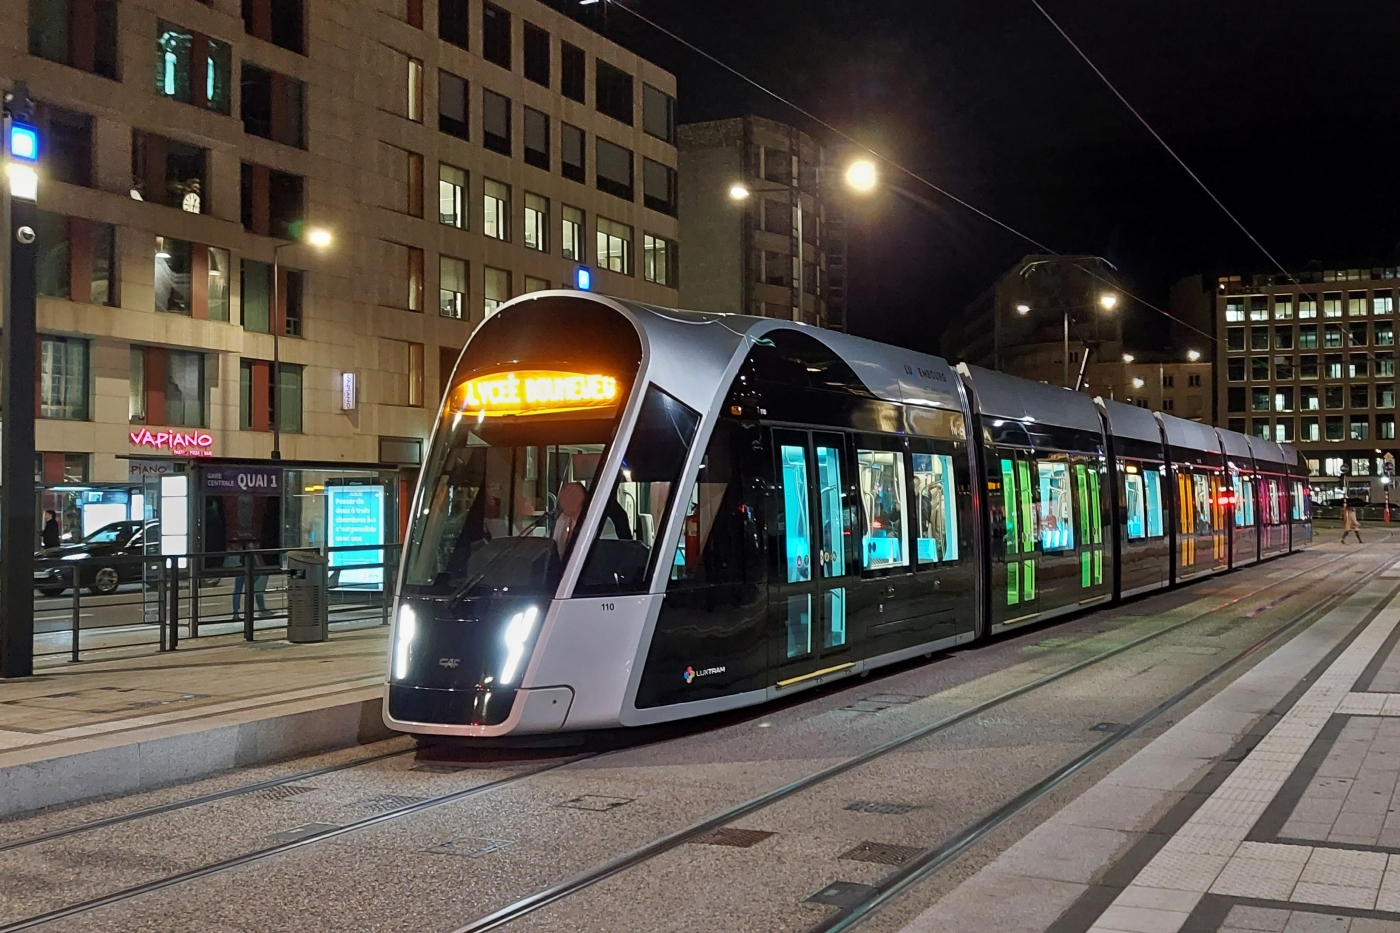 Strassenbahnfahrzeug 110, kurz vor Mitternacht an der Haltestelle, Bahnhof von Luxemburg. Mein erstes Nachtfoto mit dem Smartphone. (Hans) 08.10.2022